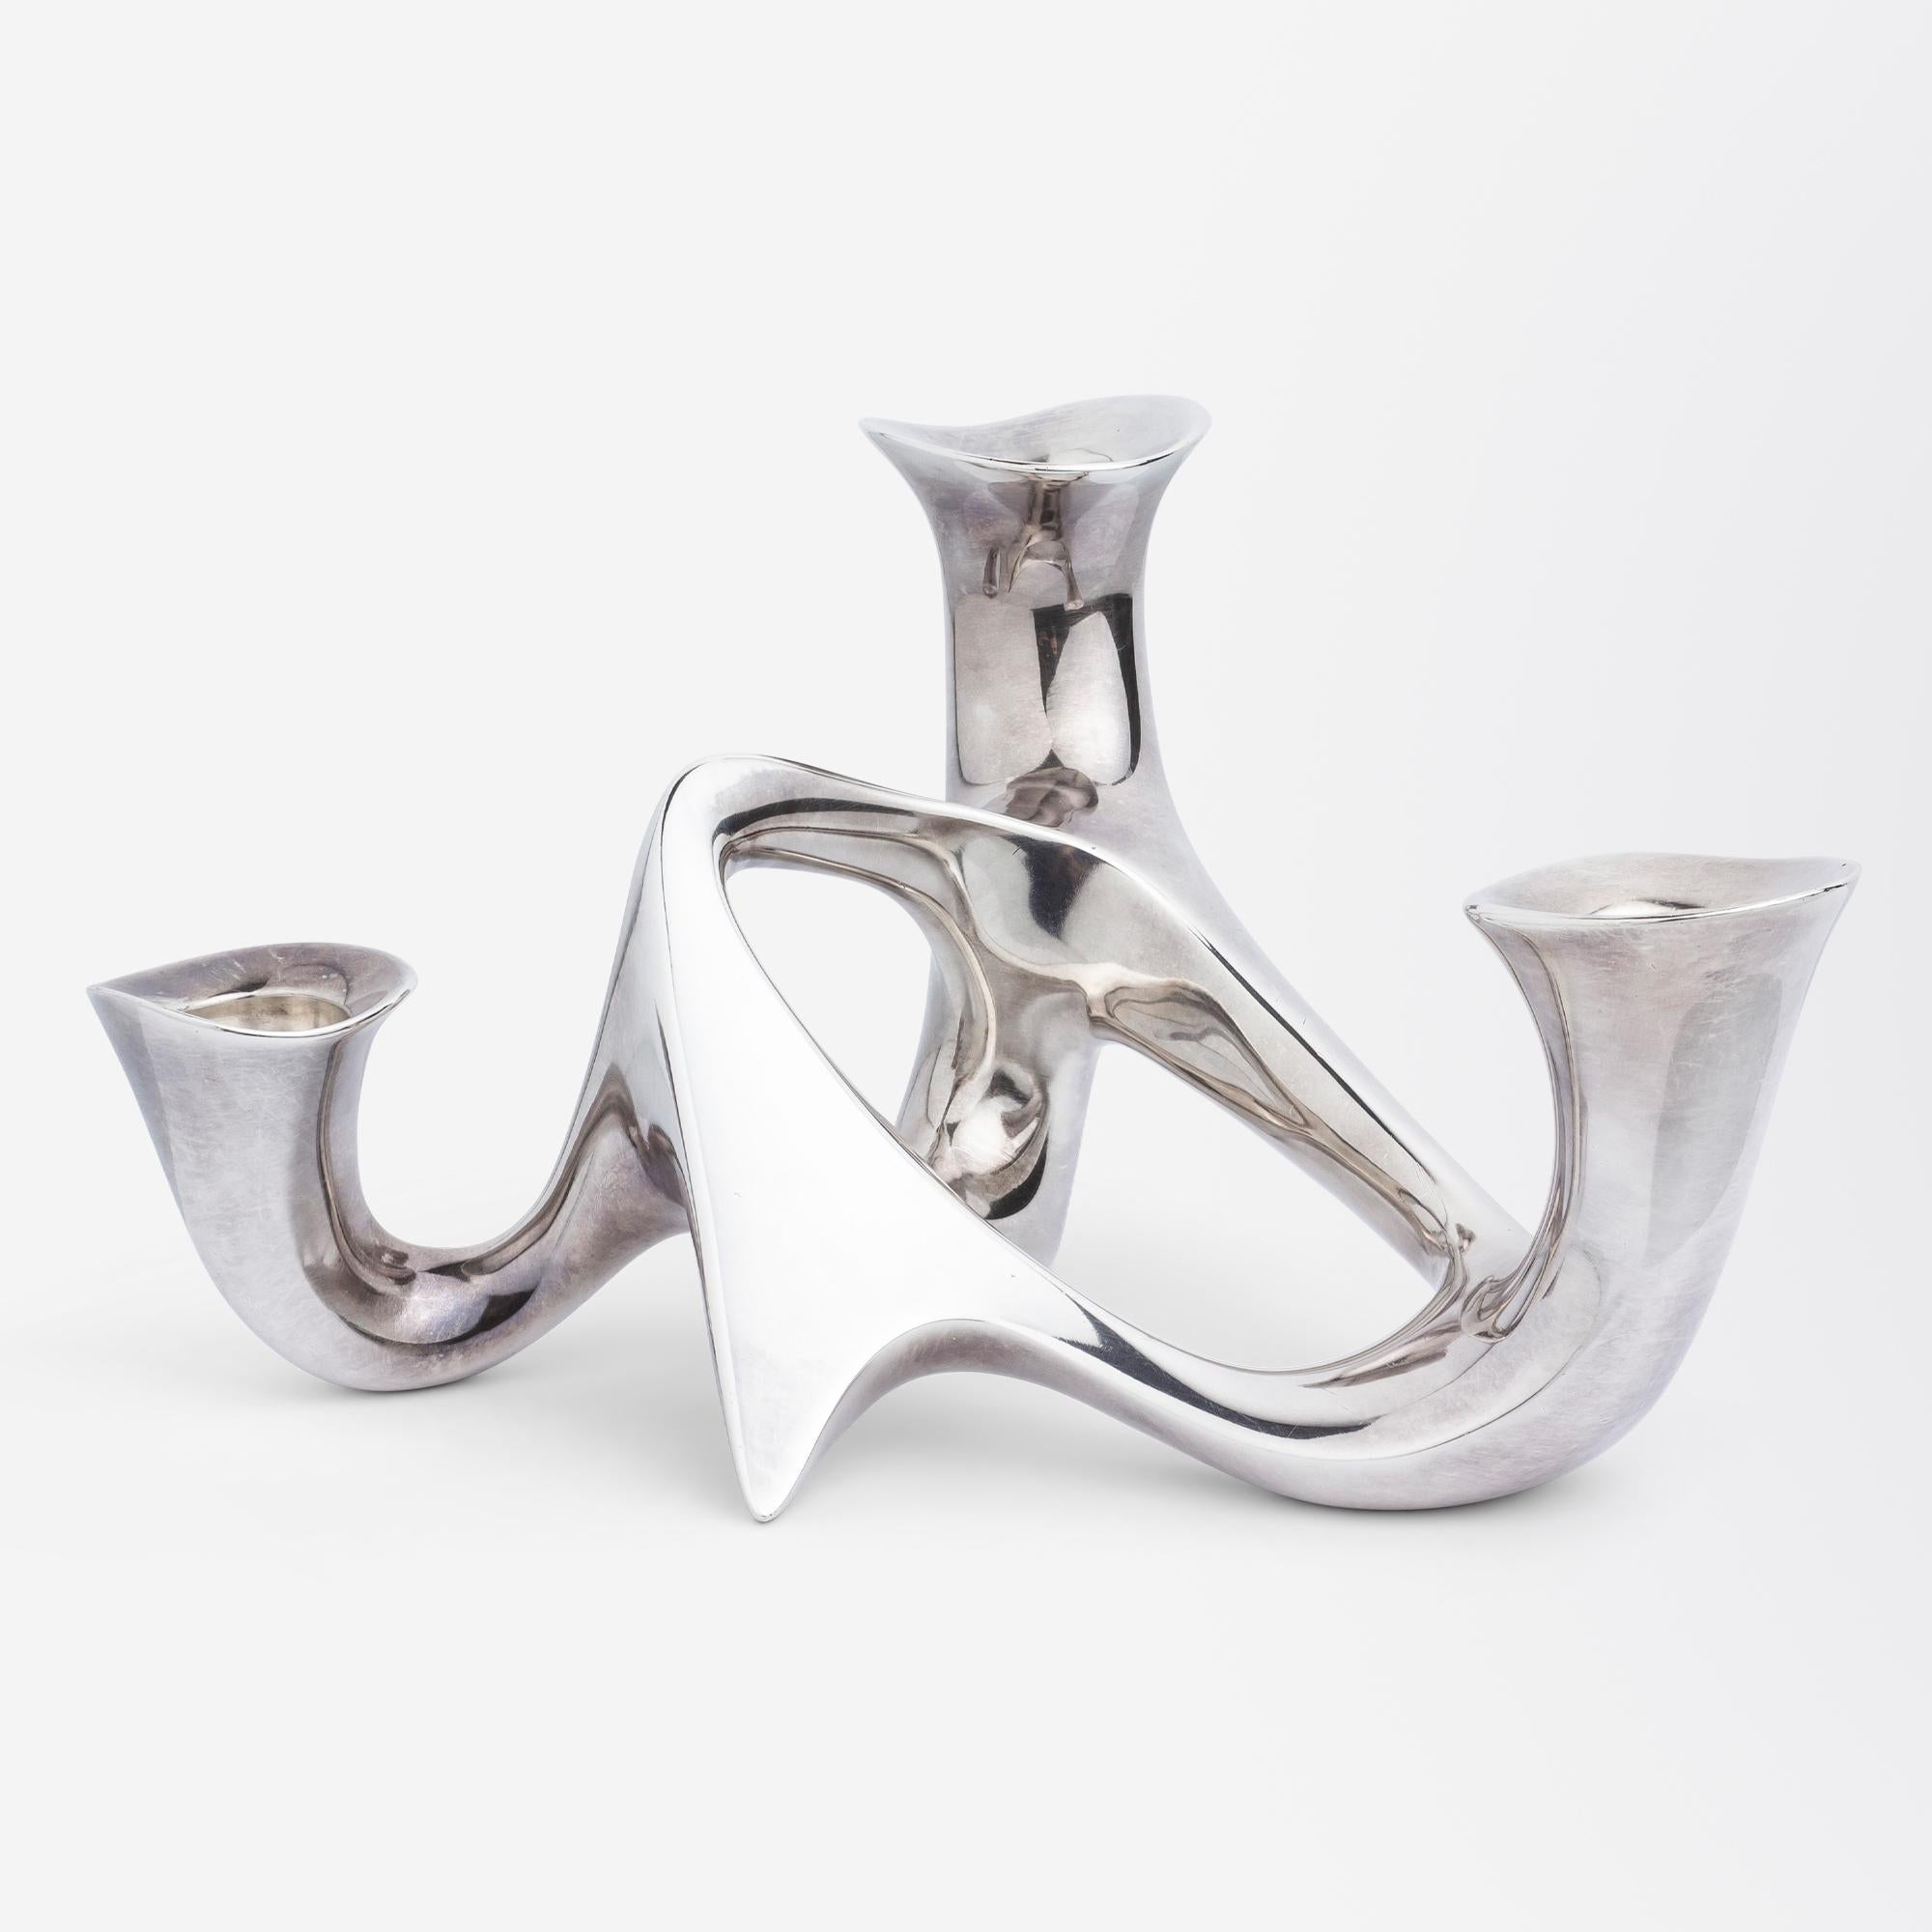 Un candélabre moderniste en argent sterling à la forme organique et sculpturale, conçu par Henning Koppel (1918-1981) pour Georg Jensen en 1946, intitulé #956. Il s'agit du premier design de vaisselle creuse réalisé par Koppel pour Georg Jensen. Il